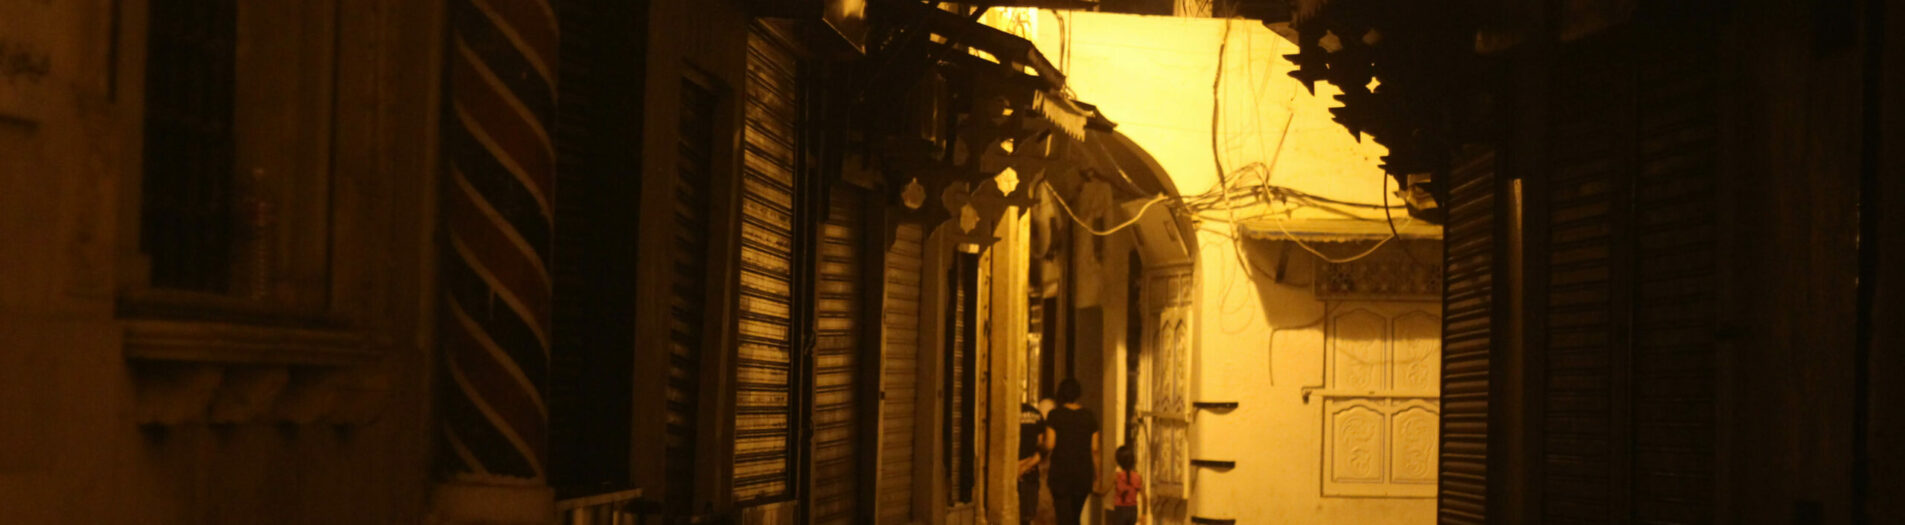 La médina de Tunis la nuit مدينة تونس في الليل